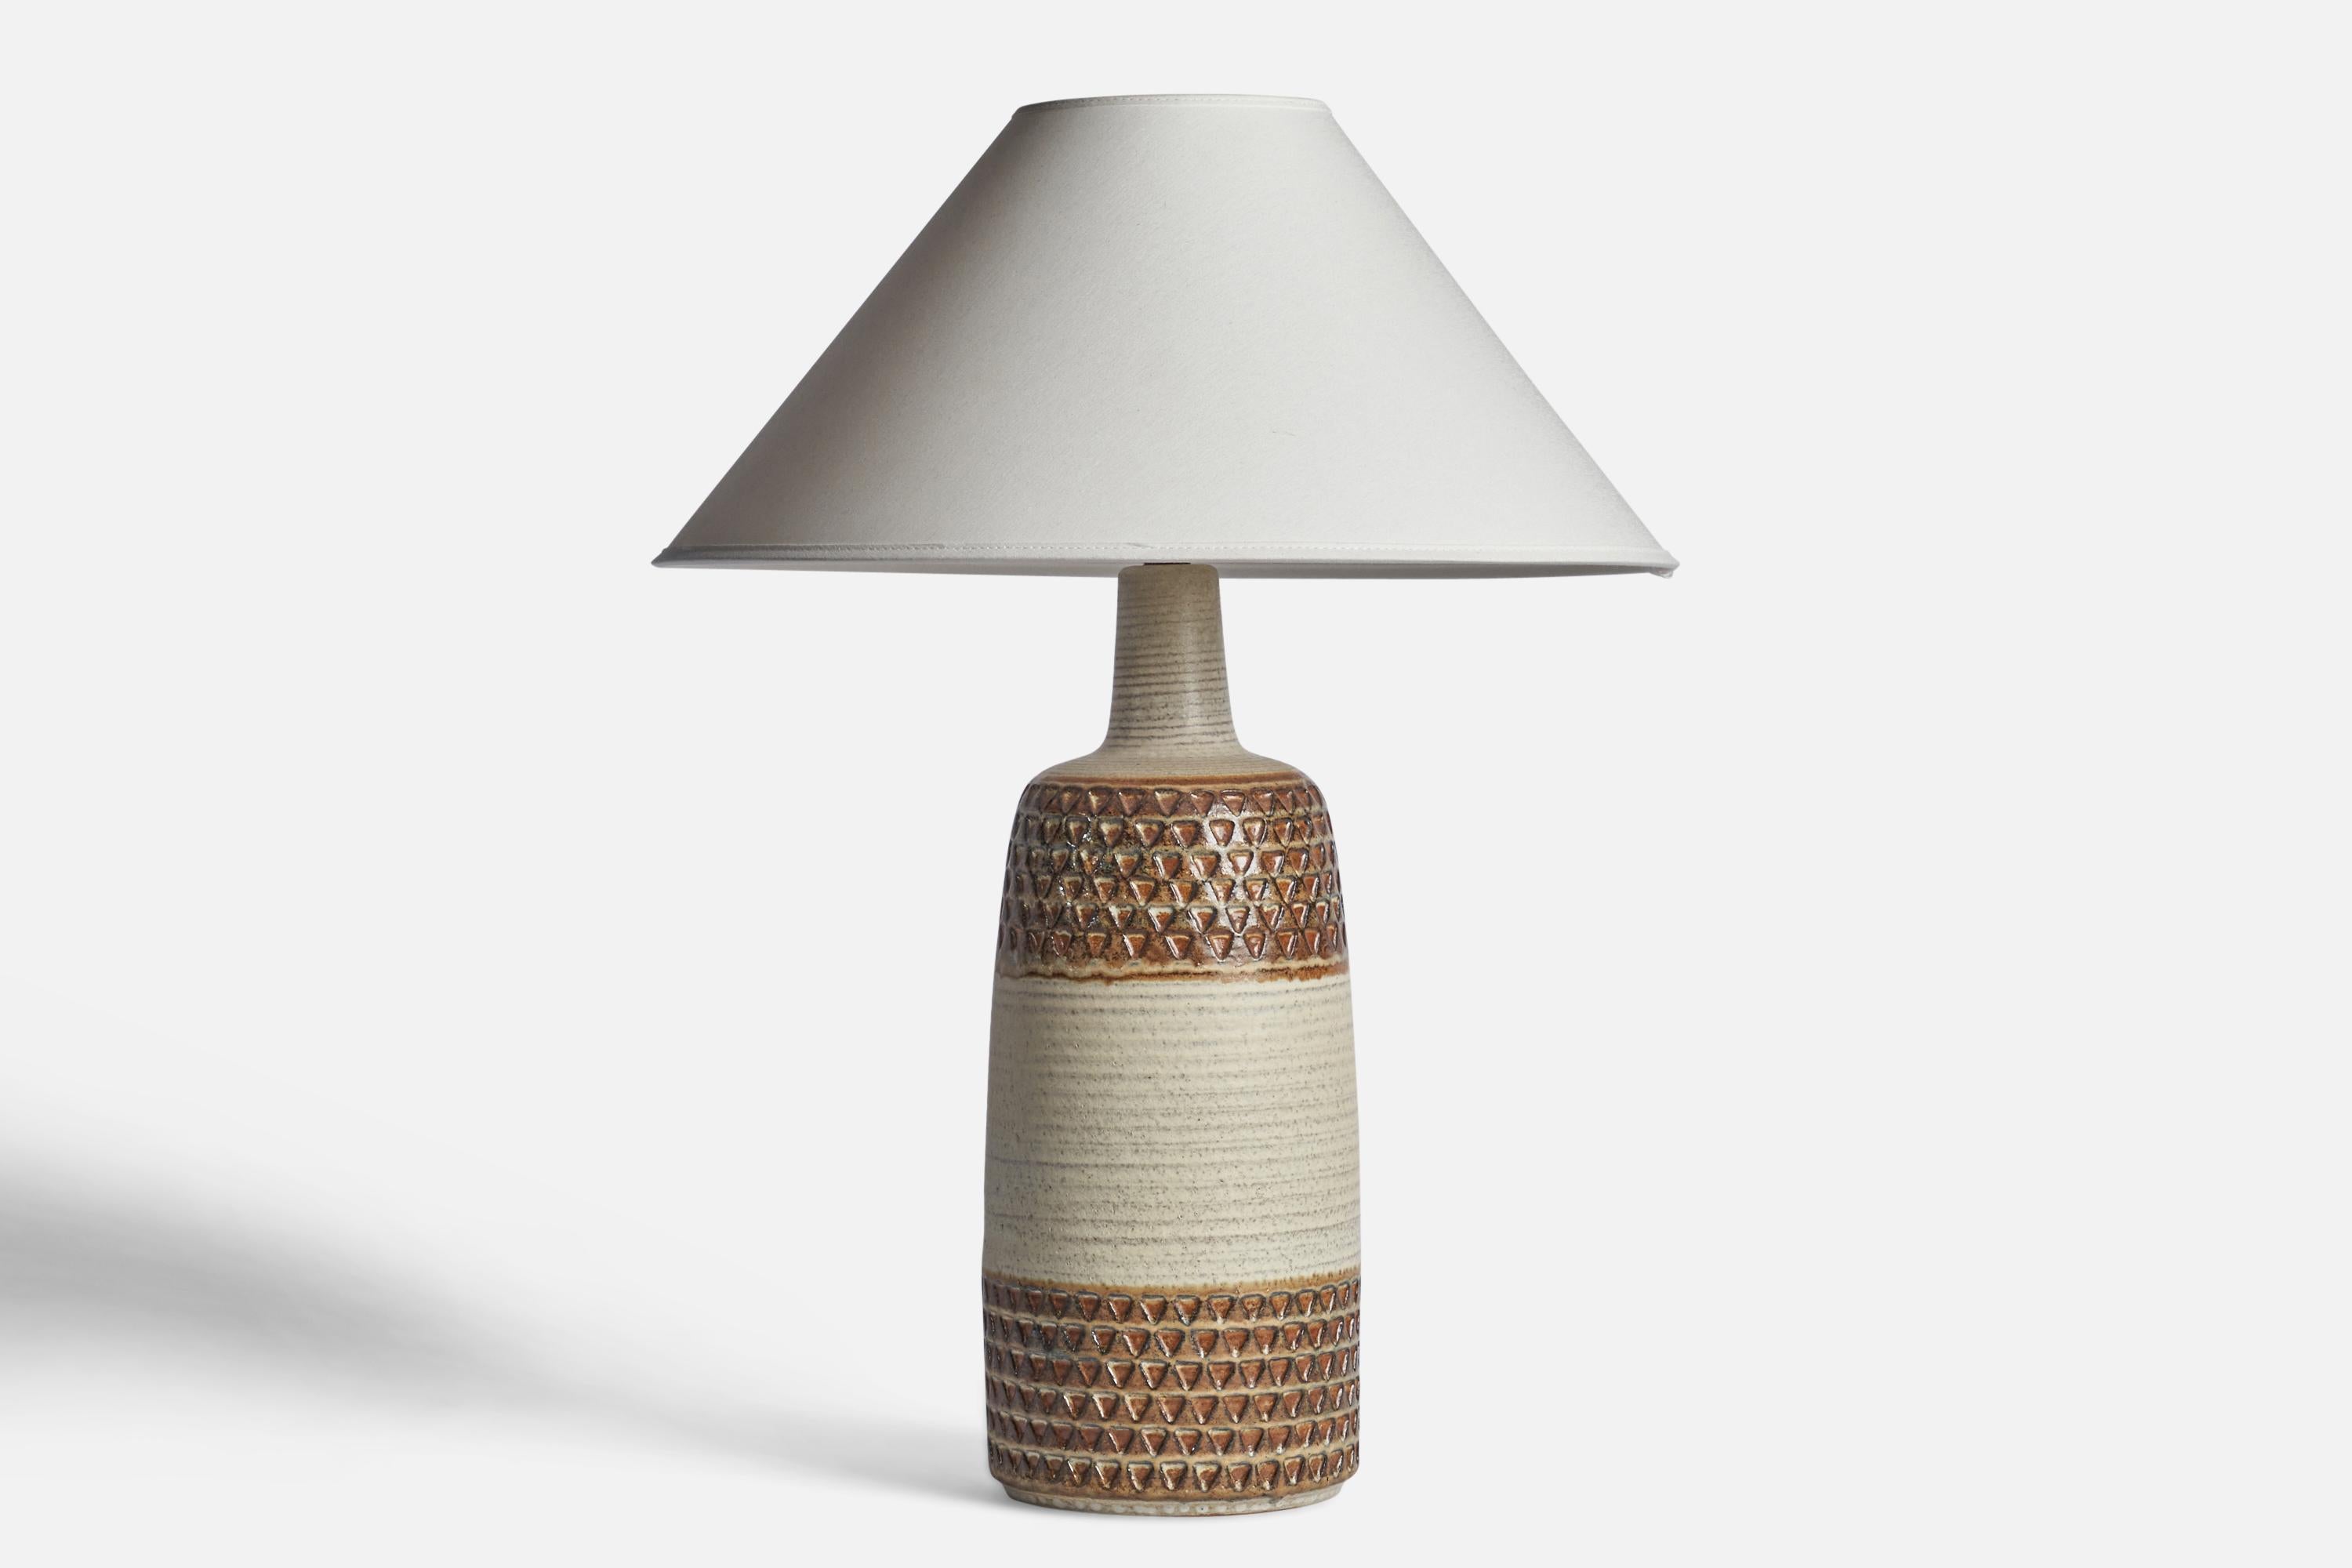 Lampe de table en grès émaillé brun et blanc, conçue et produite par Søholm Keramik, Bornholm, Danemark, années 1960.

Dimensions de la lampe (pouces) : 17